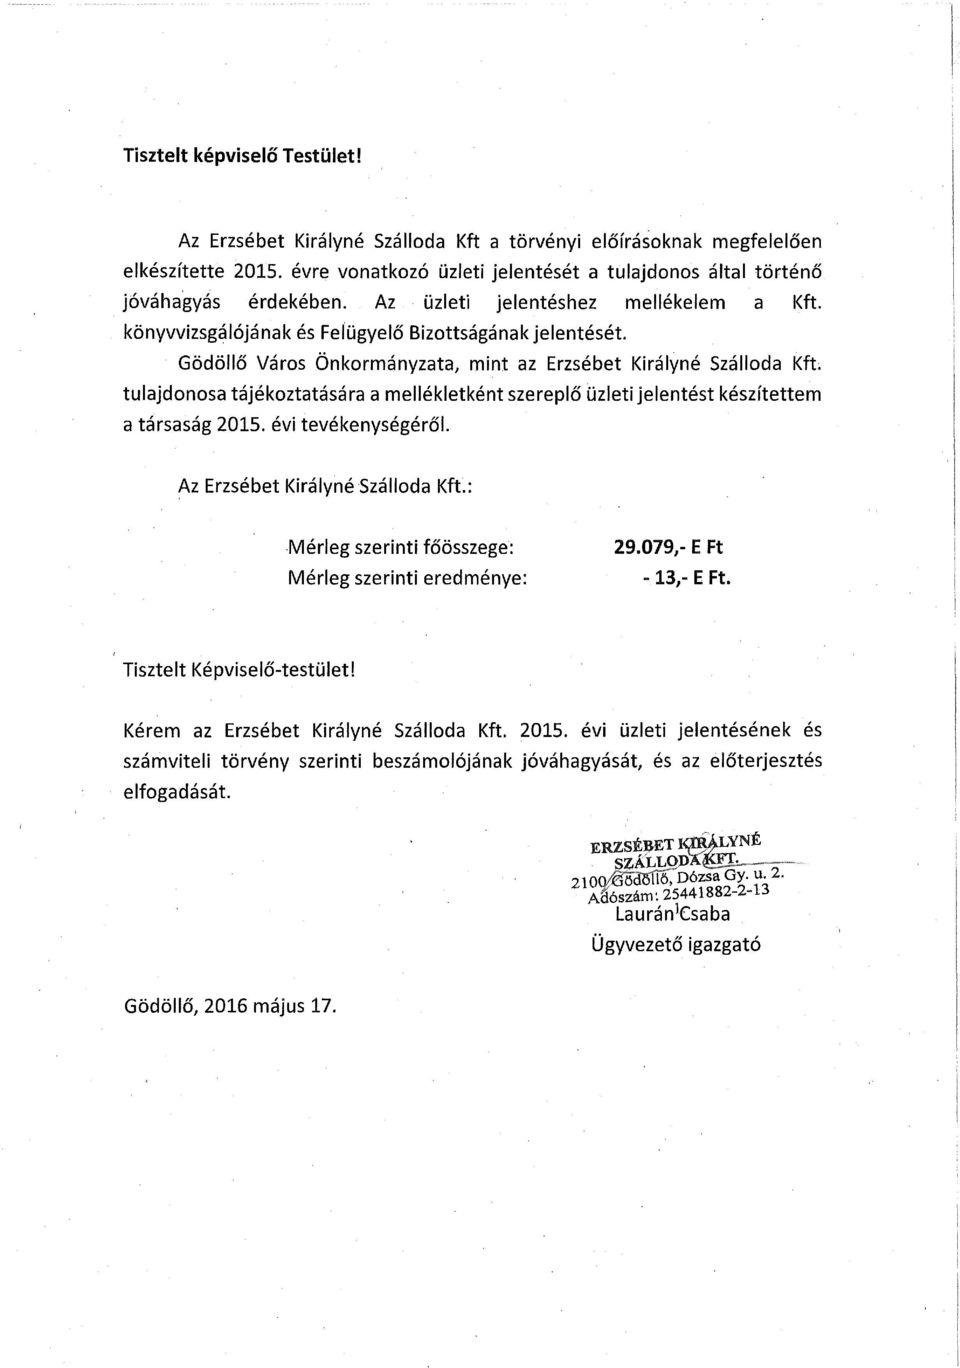 Gödöllő Város Önkormányzata, mint az Erzsébet Királyné Szálloda Kfü tulajdonosa tájékoztatására a mellékletként szereplő uzleti jelentést készítettem a társaság 215. évi tevékenységéről.